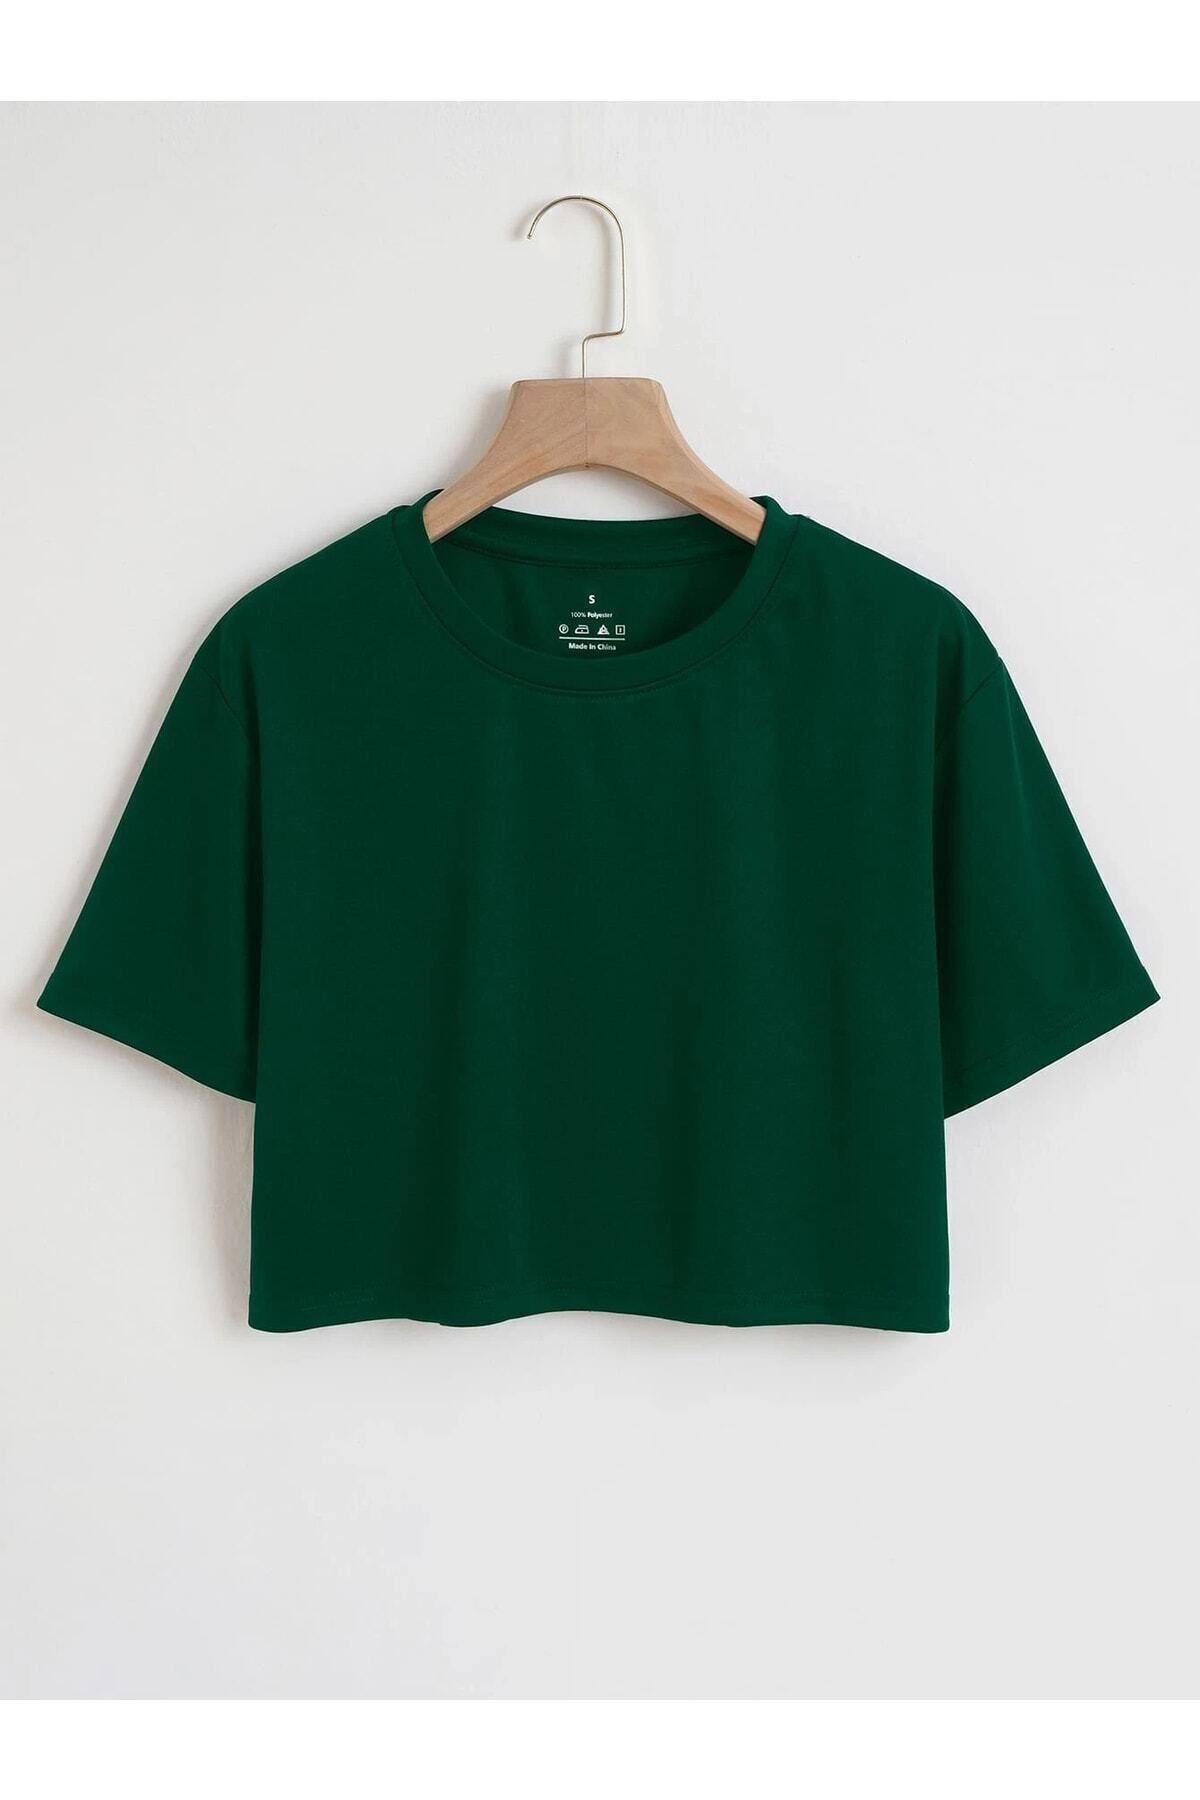 DAXİS Sportwear Company Renkli Oversize Crop Tshirt